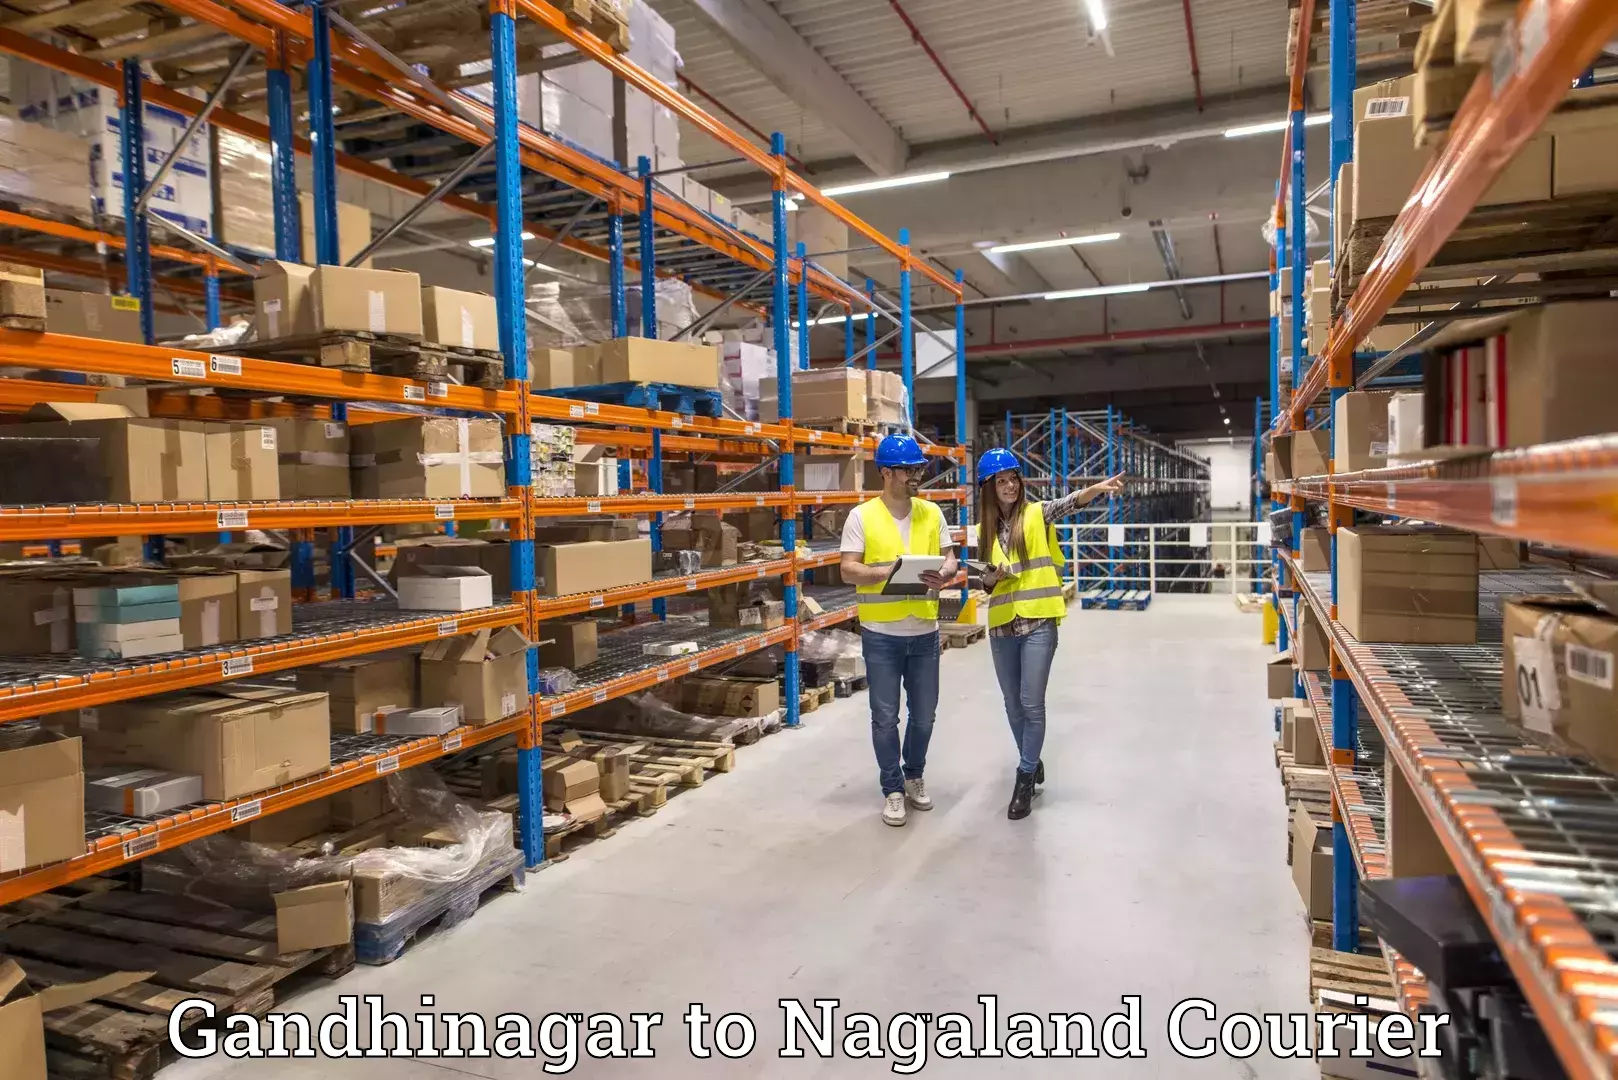 24/7 courier service Gandhinagar to Nagaland